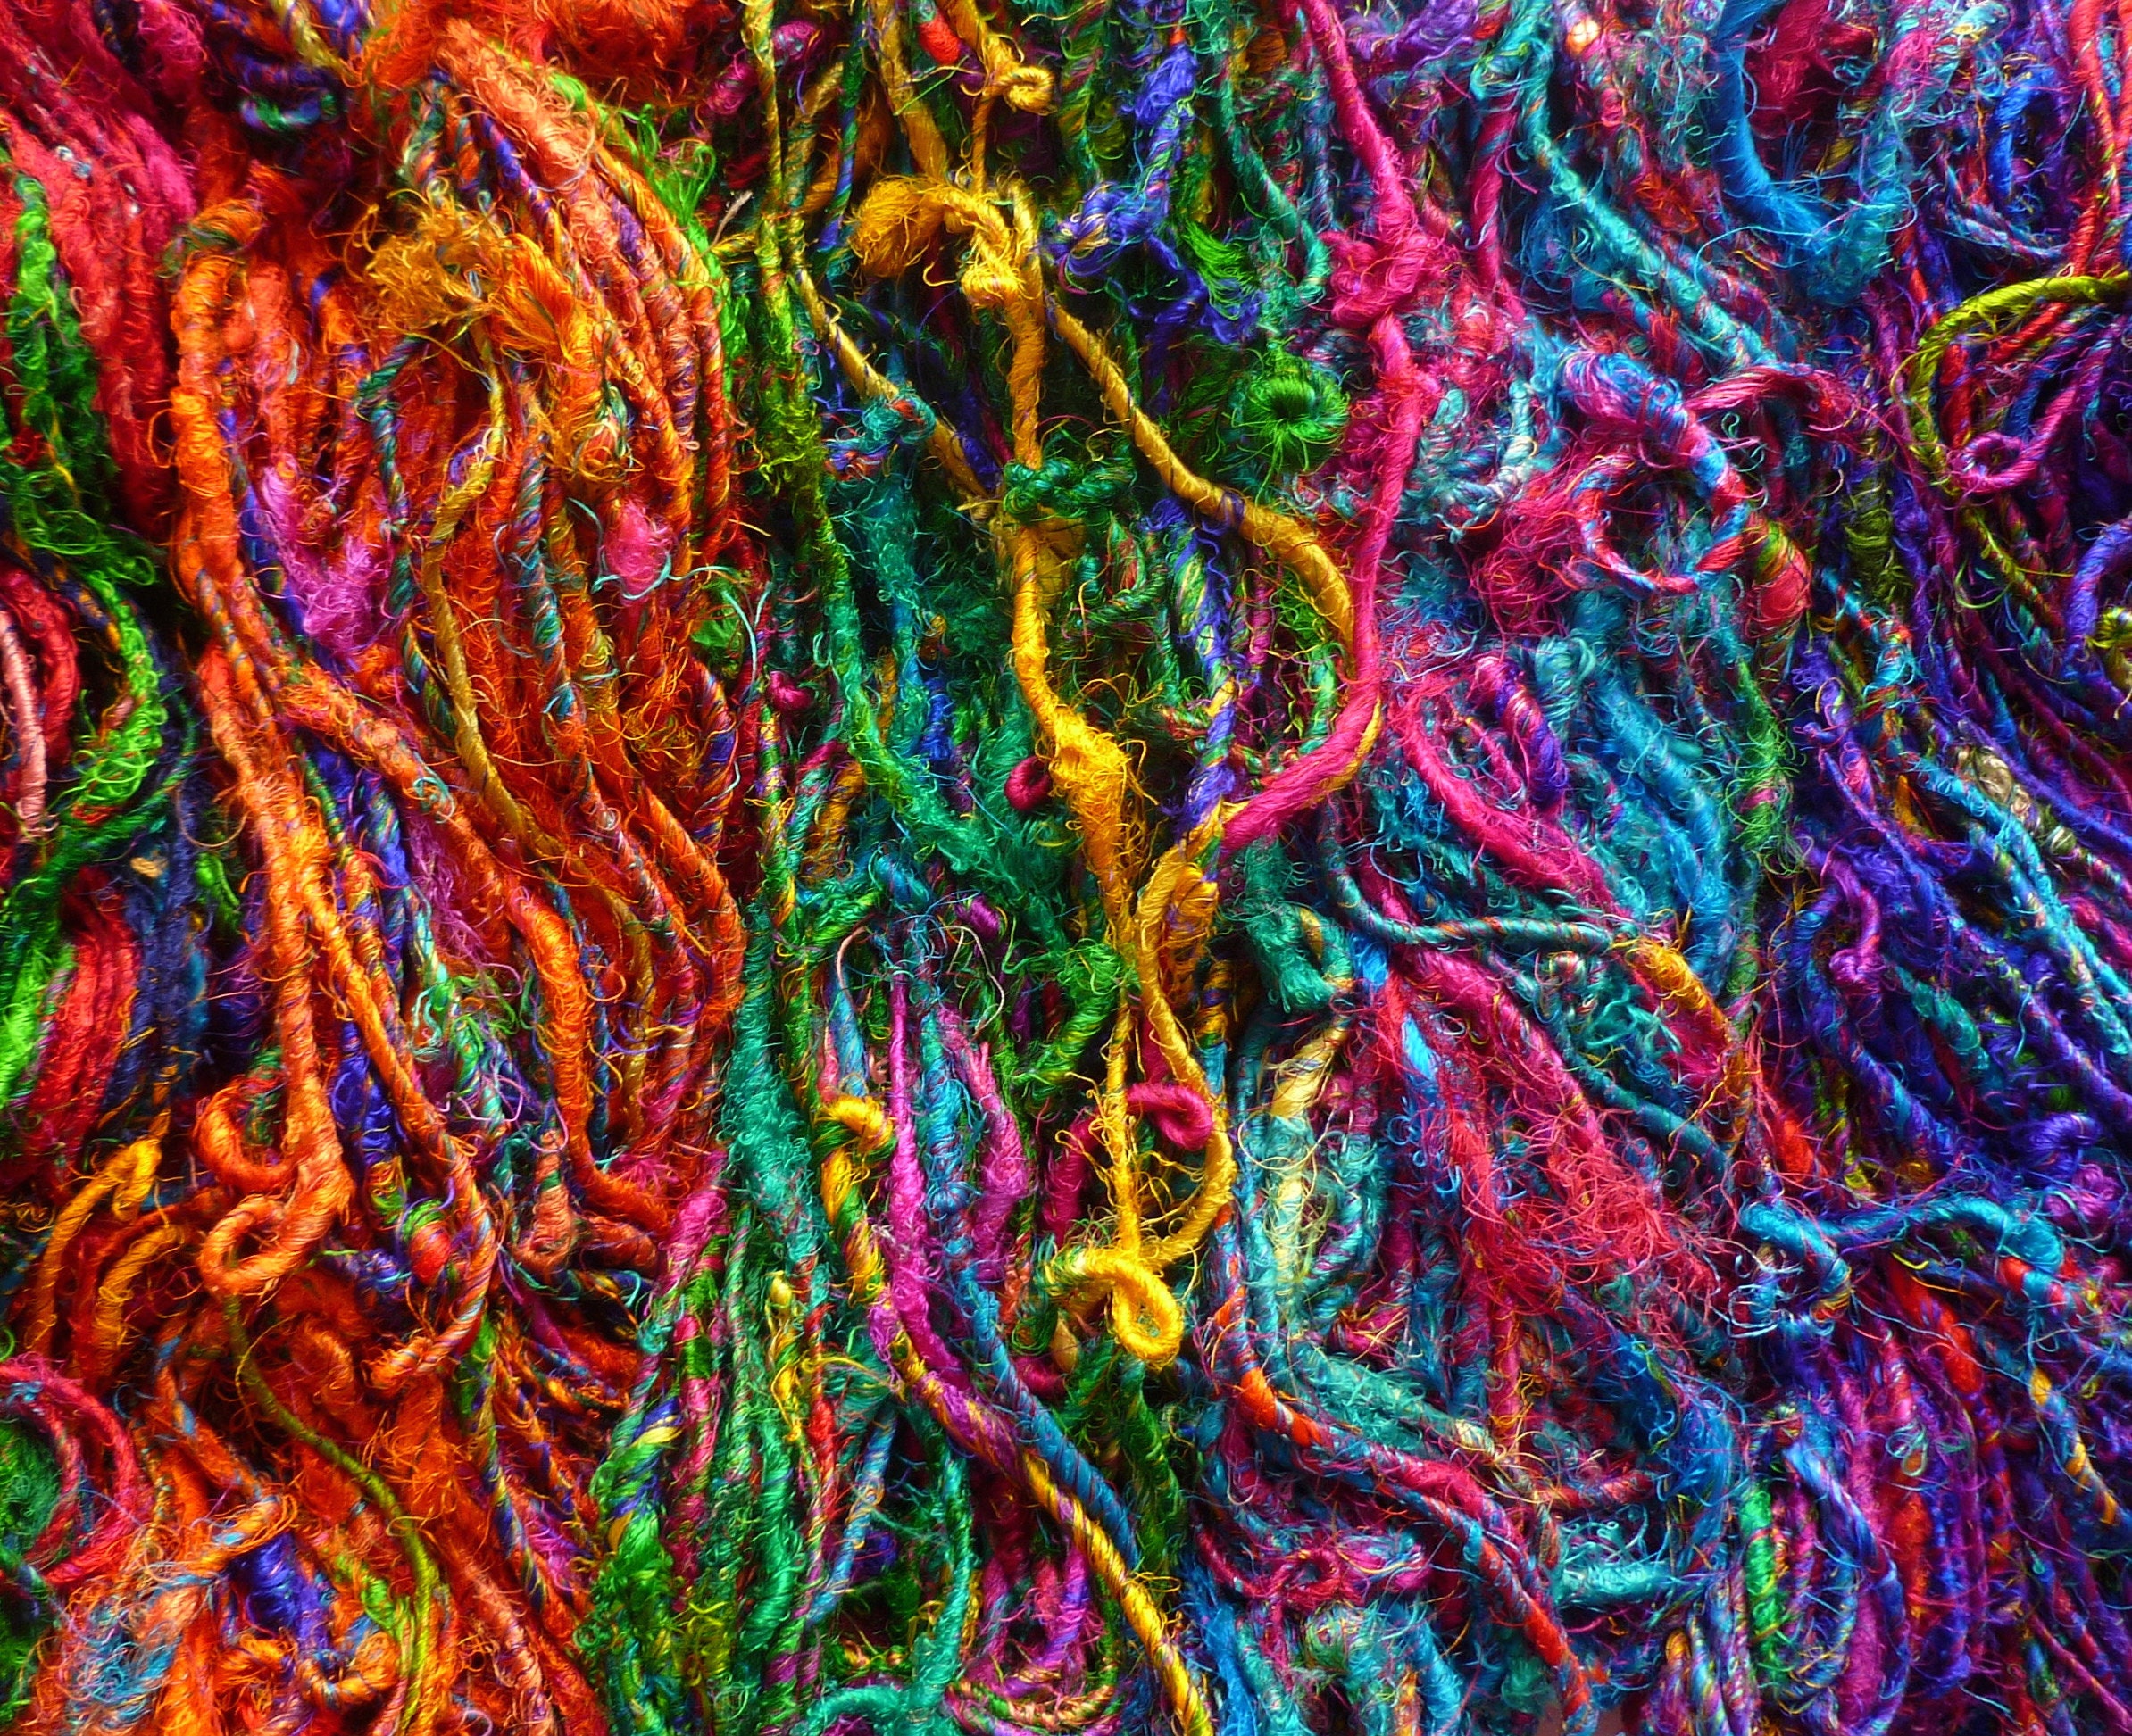 Sari нитки. Пряжа меняющая цвет. Recycled Yarn. Пряжа Sari для отделки. Любой цветной